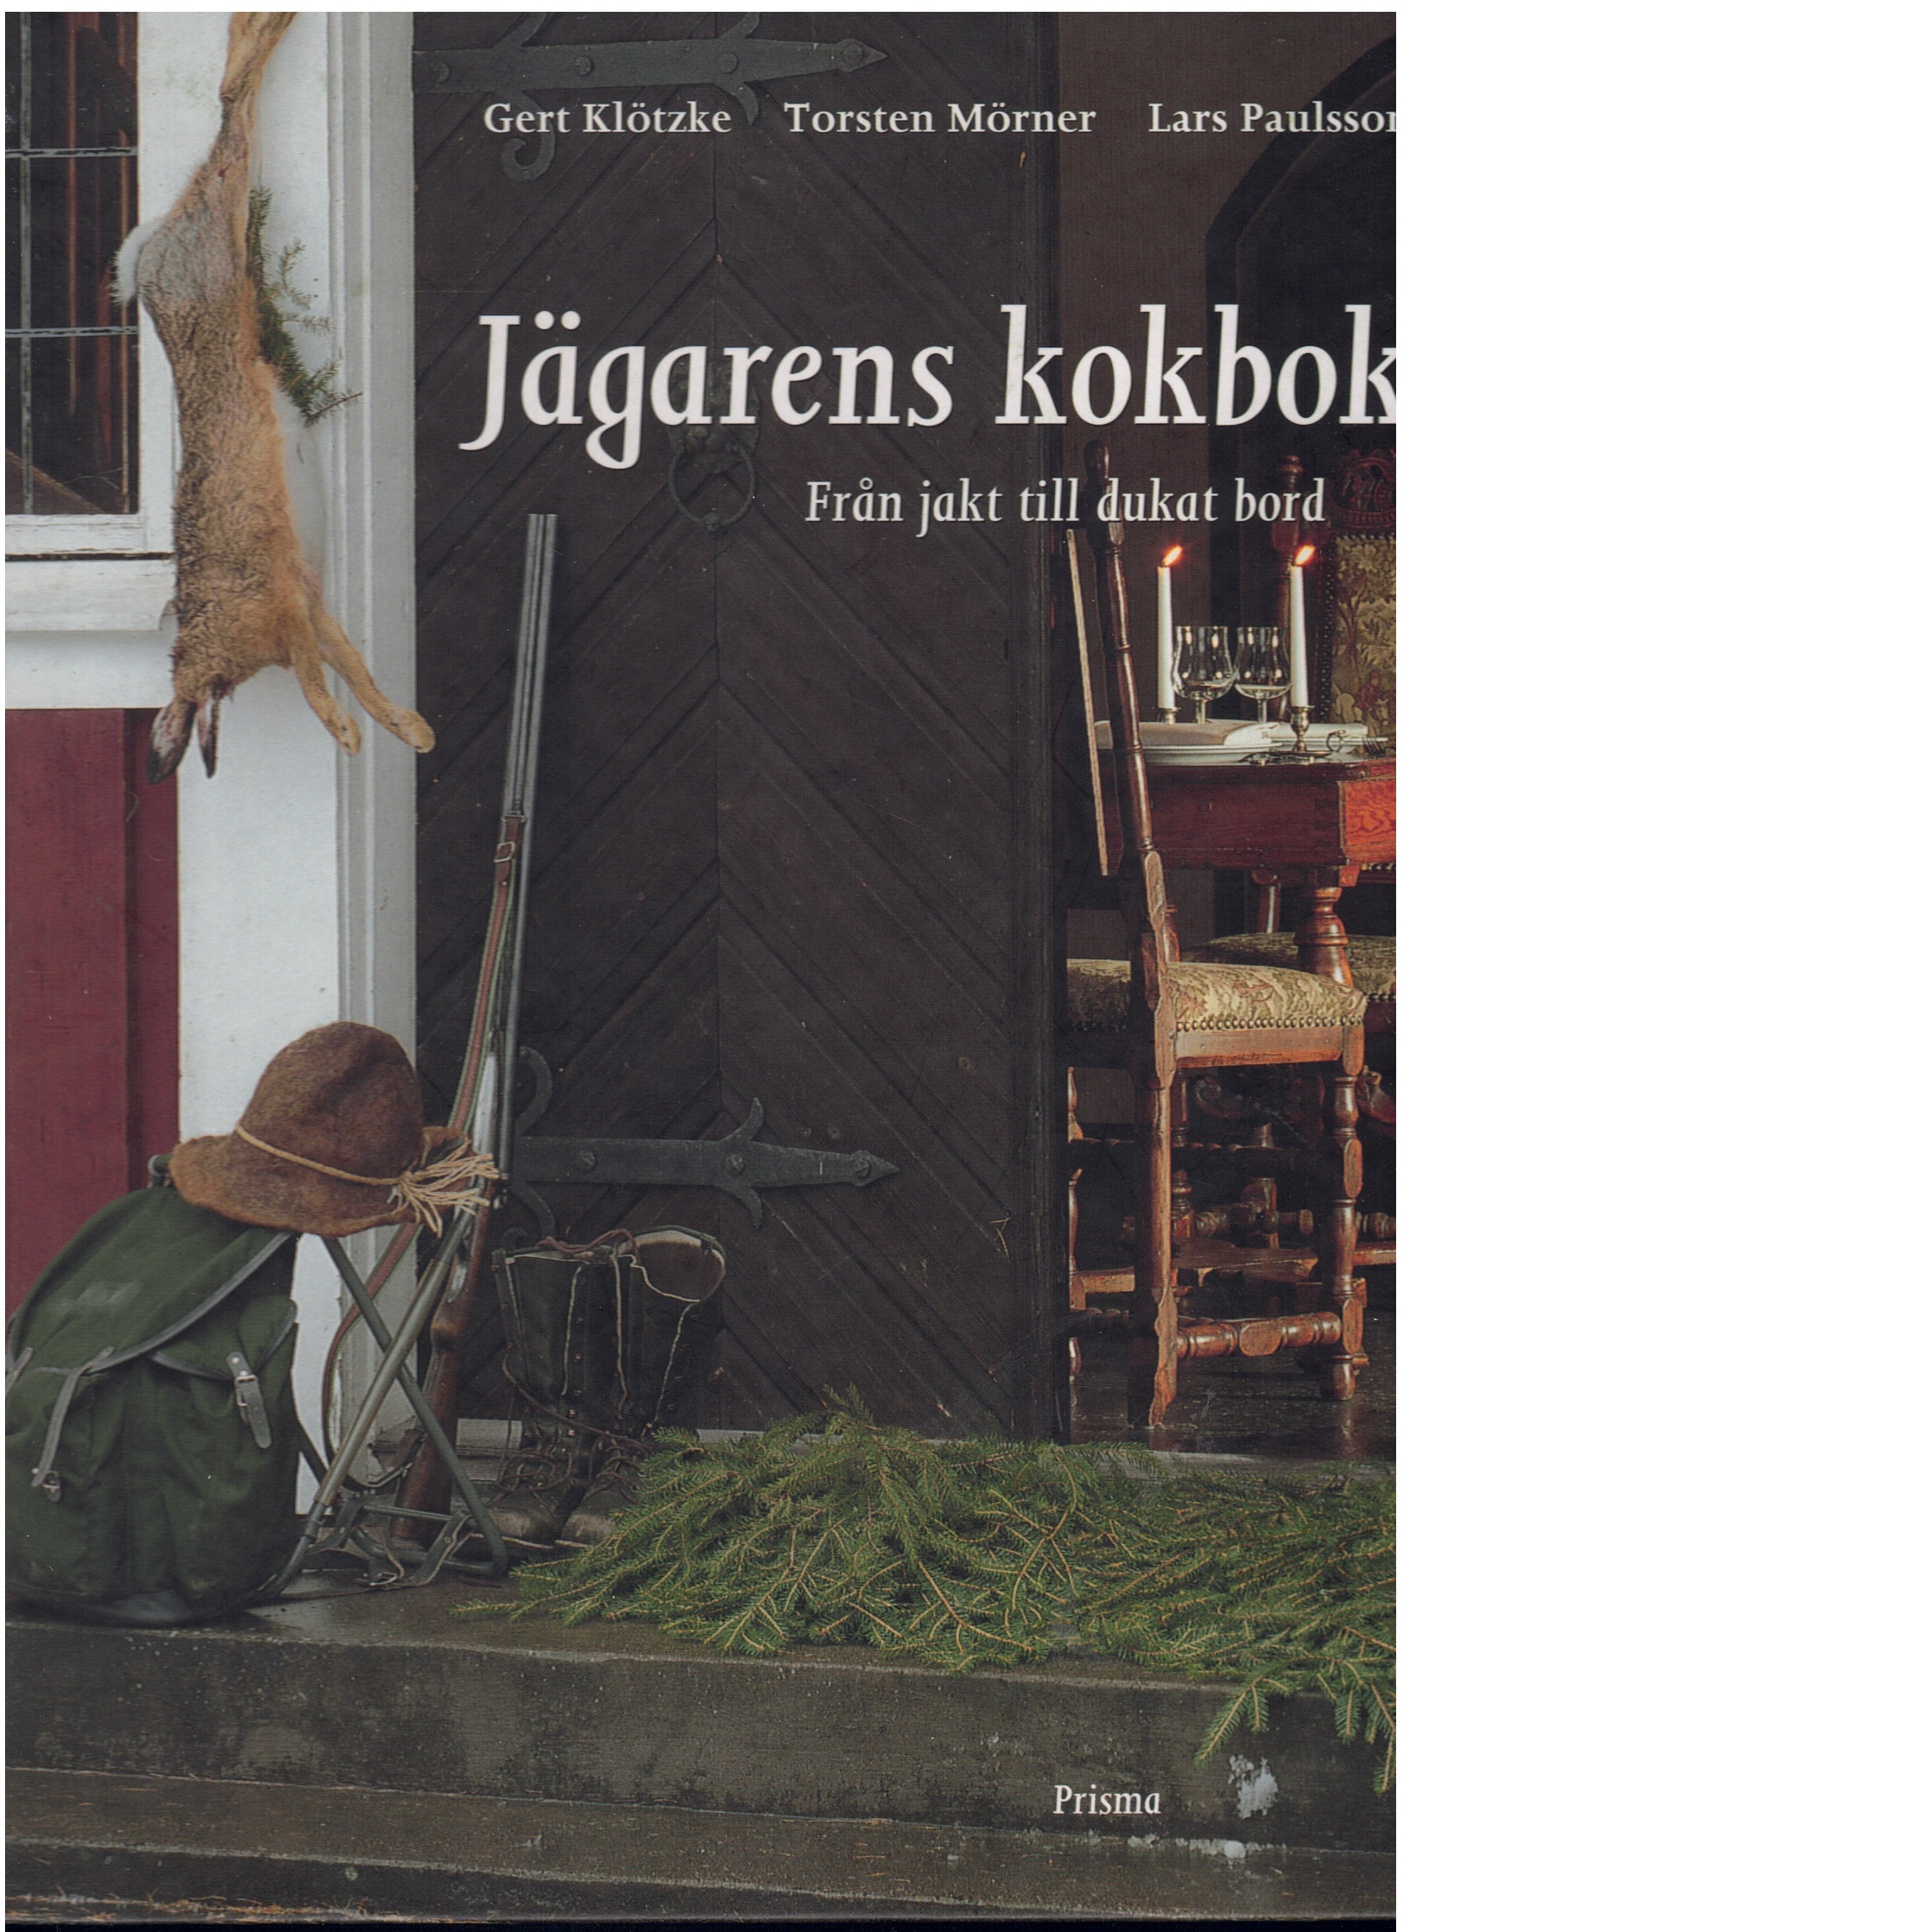 Jägarens kokbok : från jakt till dukat bord - Klötzke, Gert, och Mörner, Torsten